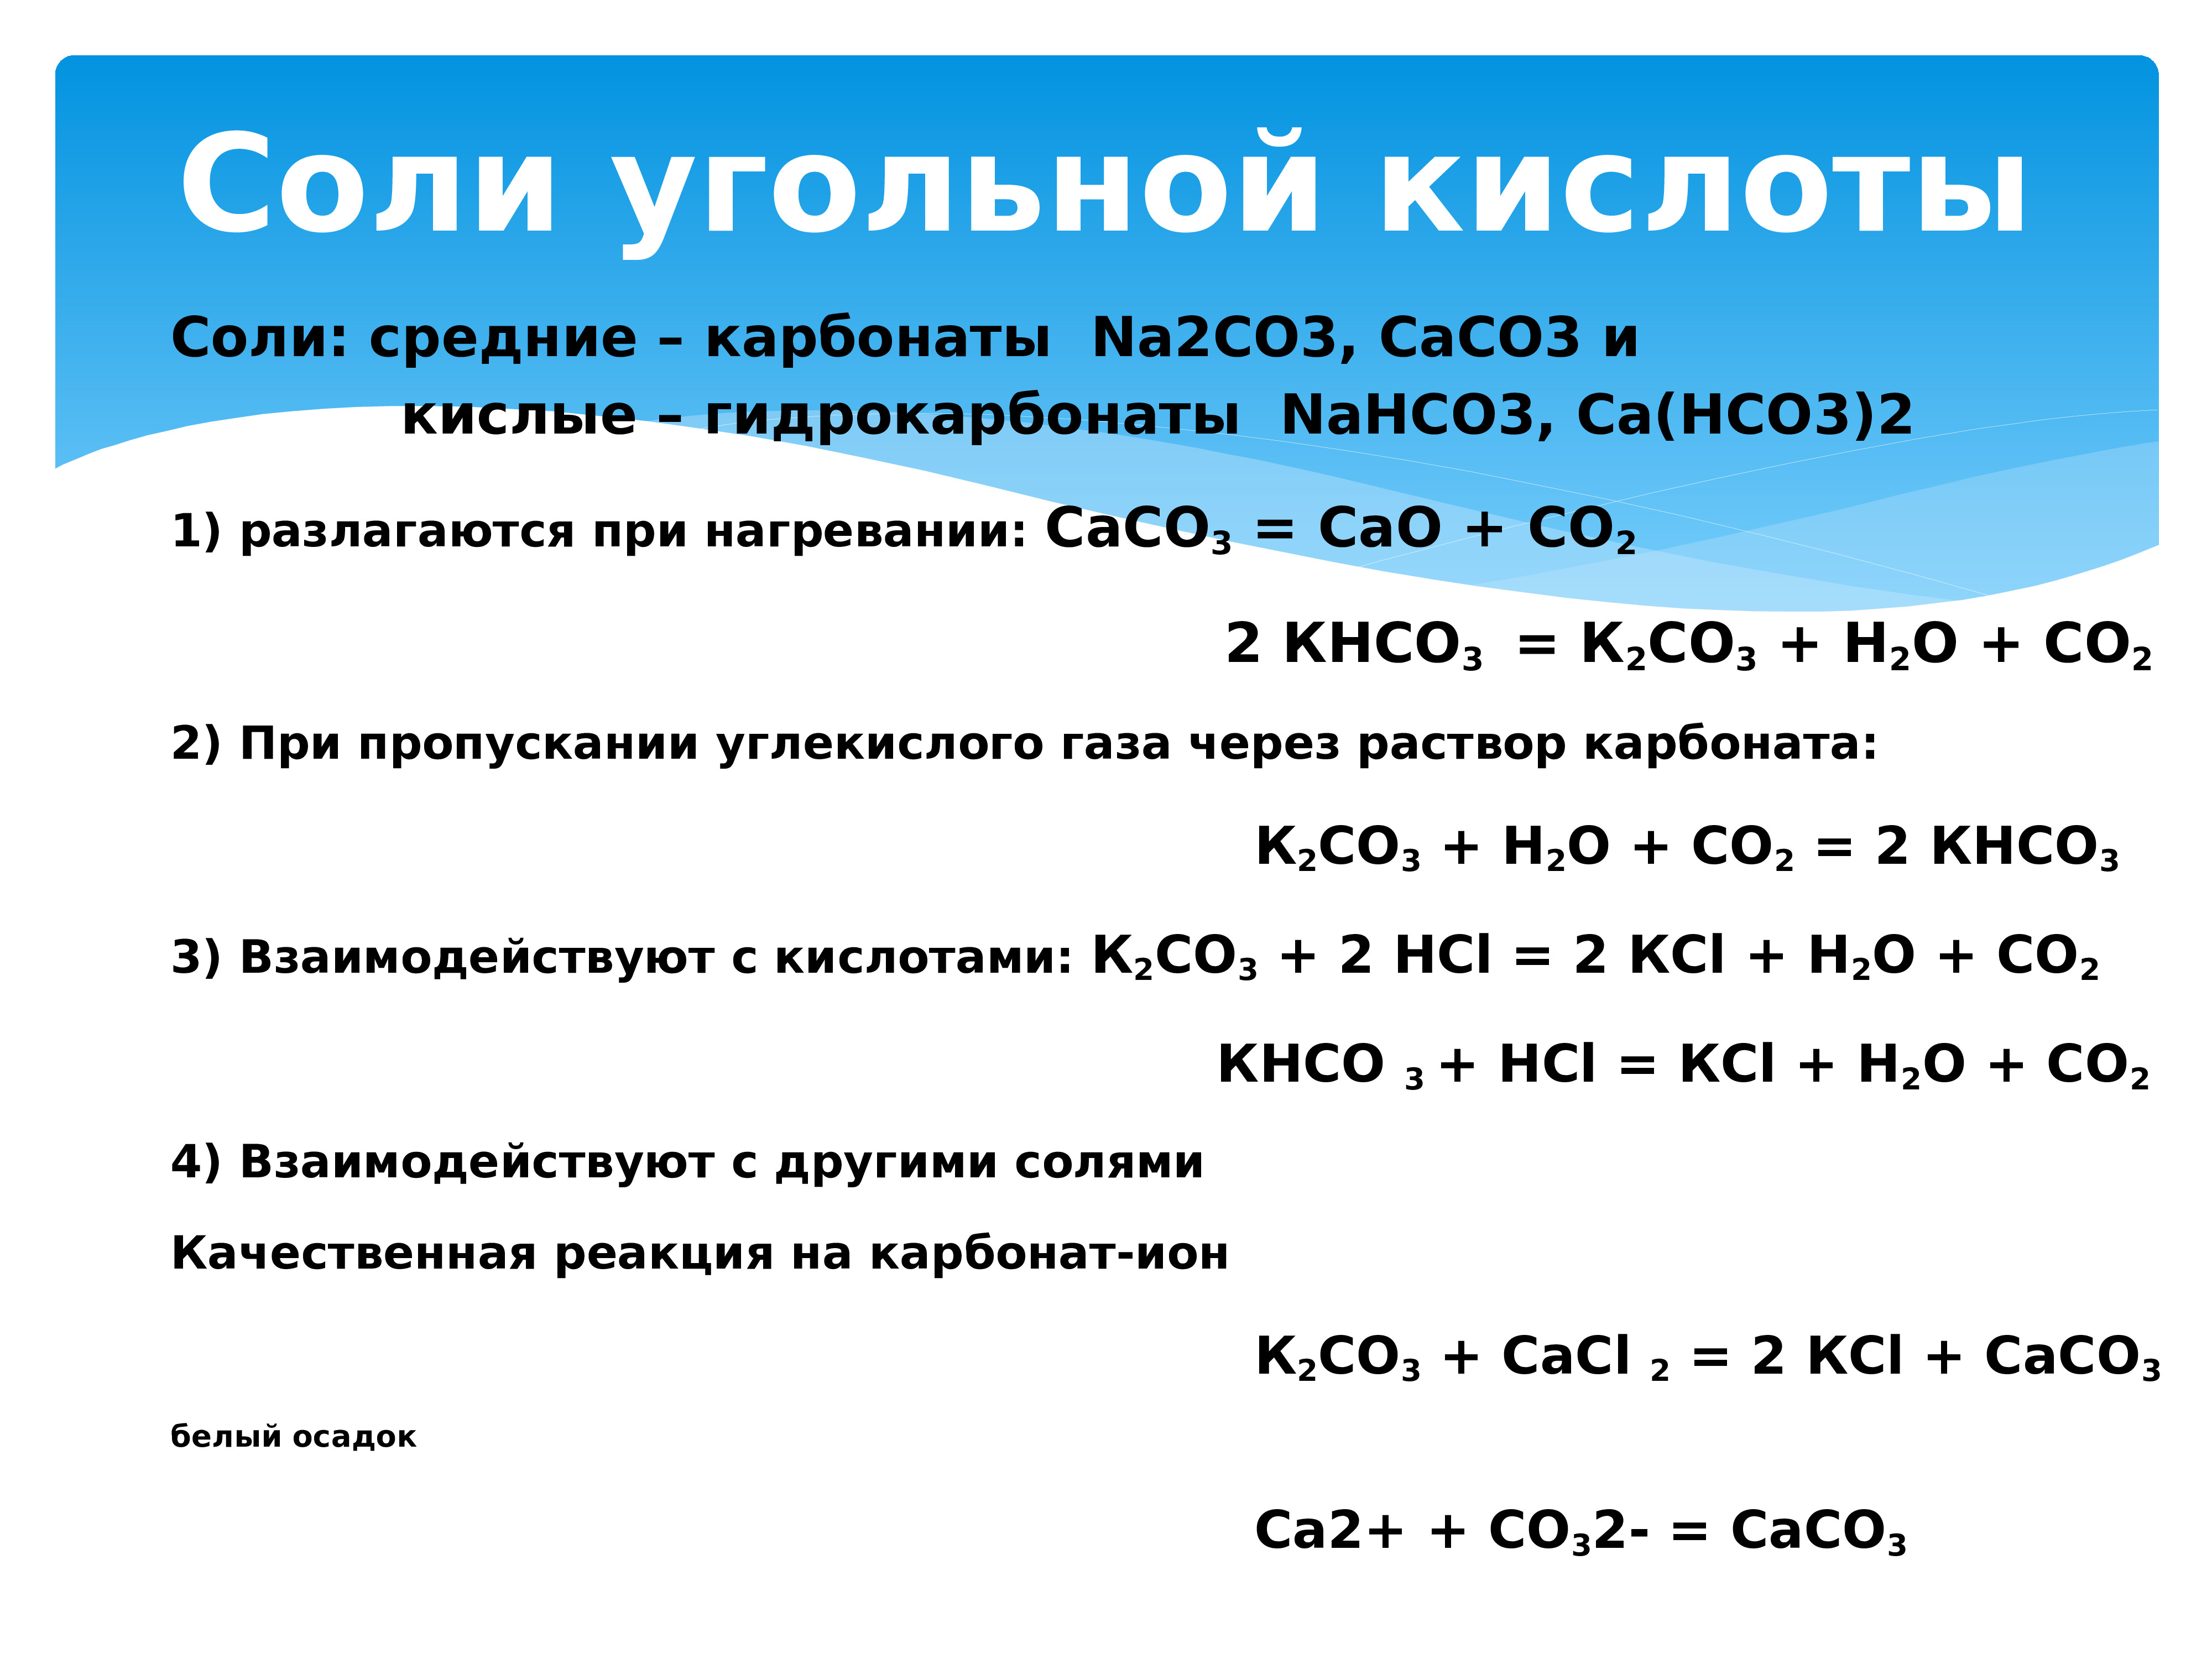 Формула разложения кислот. Соли угольной кислоты карбонаты и гидрокарбонаты. Разложение карбонатов и гидрокарбонатов при нагревании. Реакции с углекислым газом. Соли угольной кислоты.